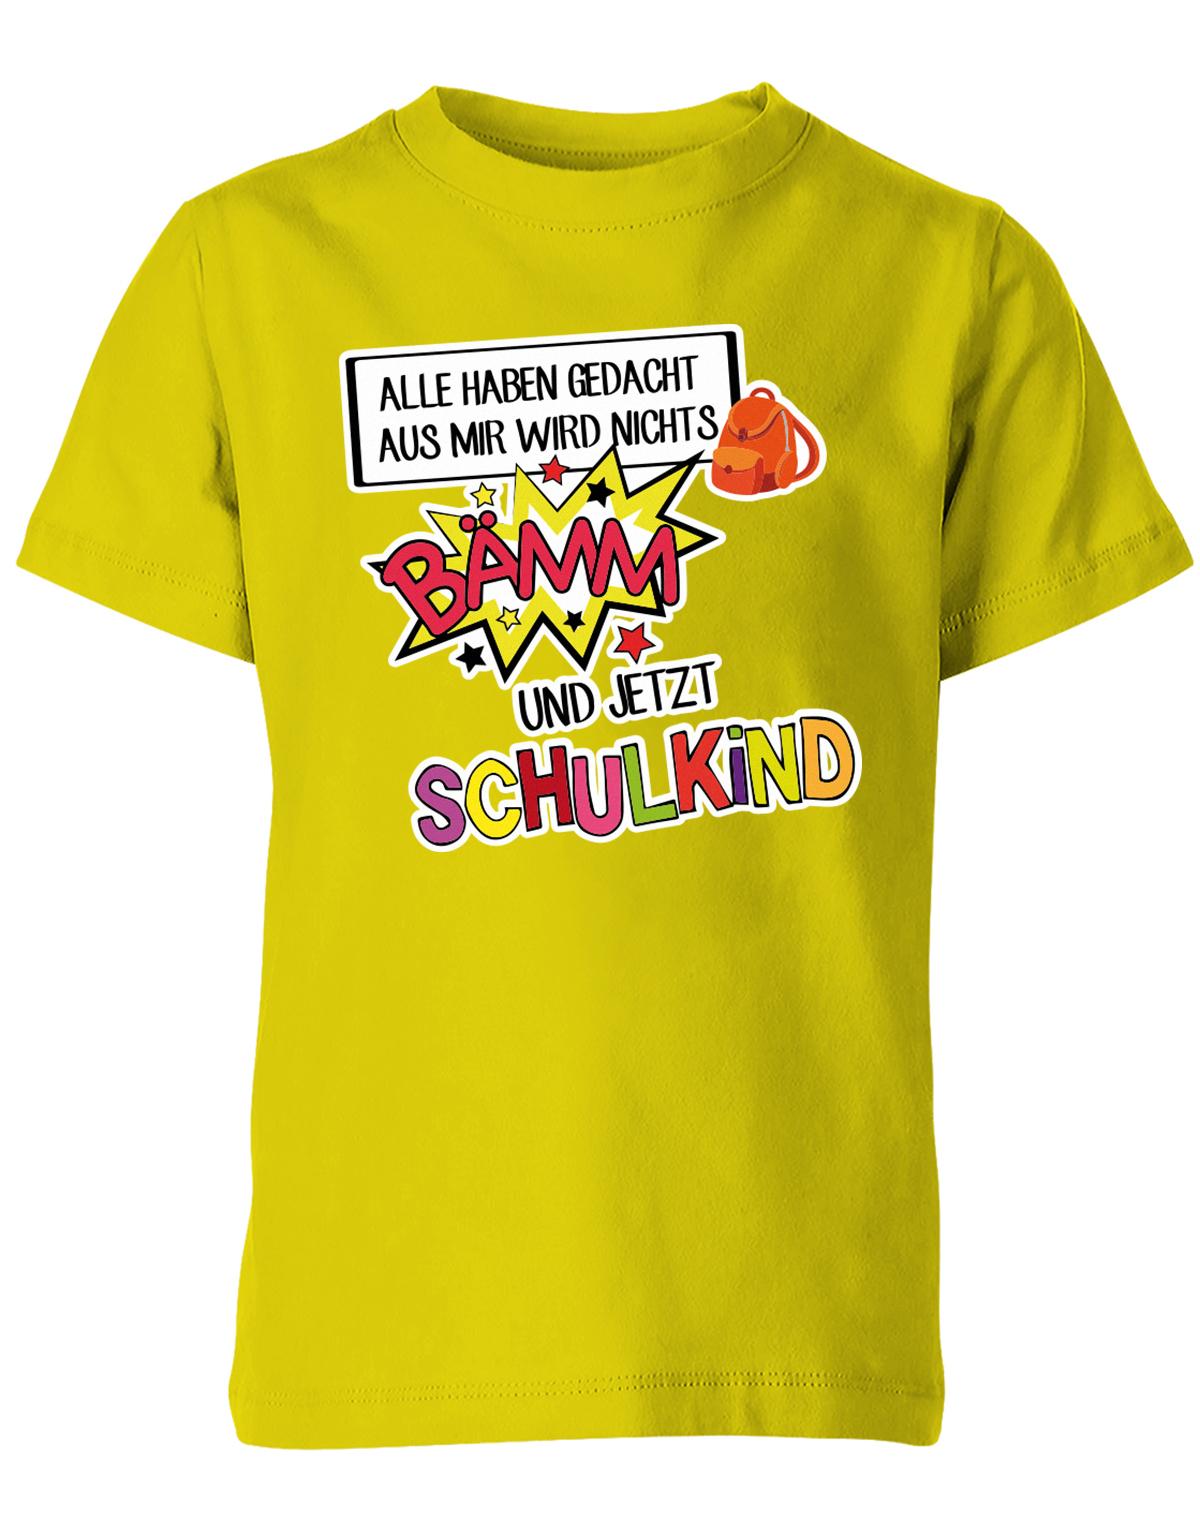 Alle haben gedacht aus mir wird nichts - bämm Schulkind - Einschulung T-Shirt Gelb